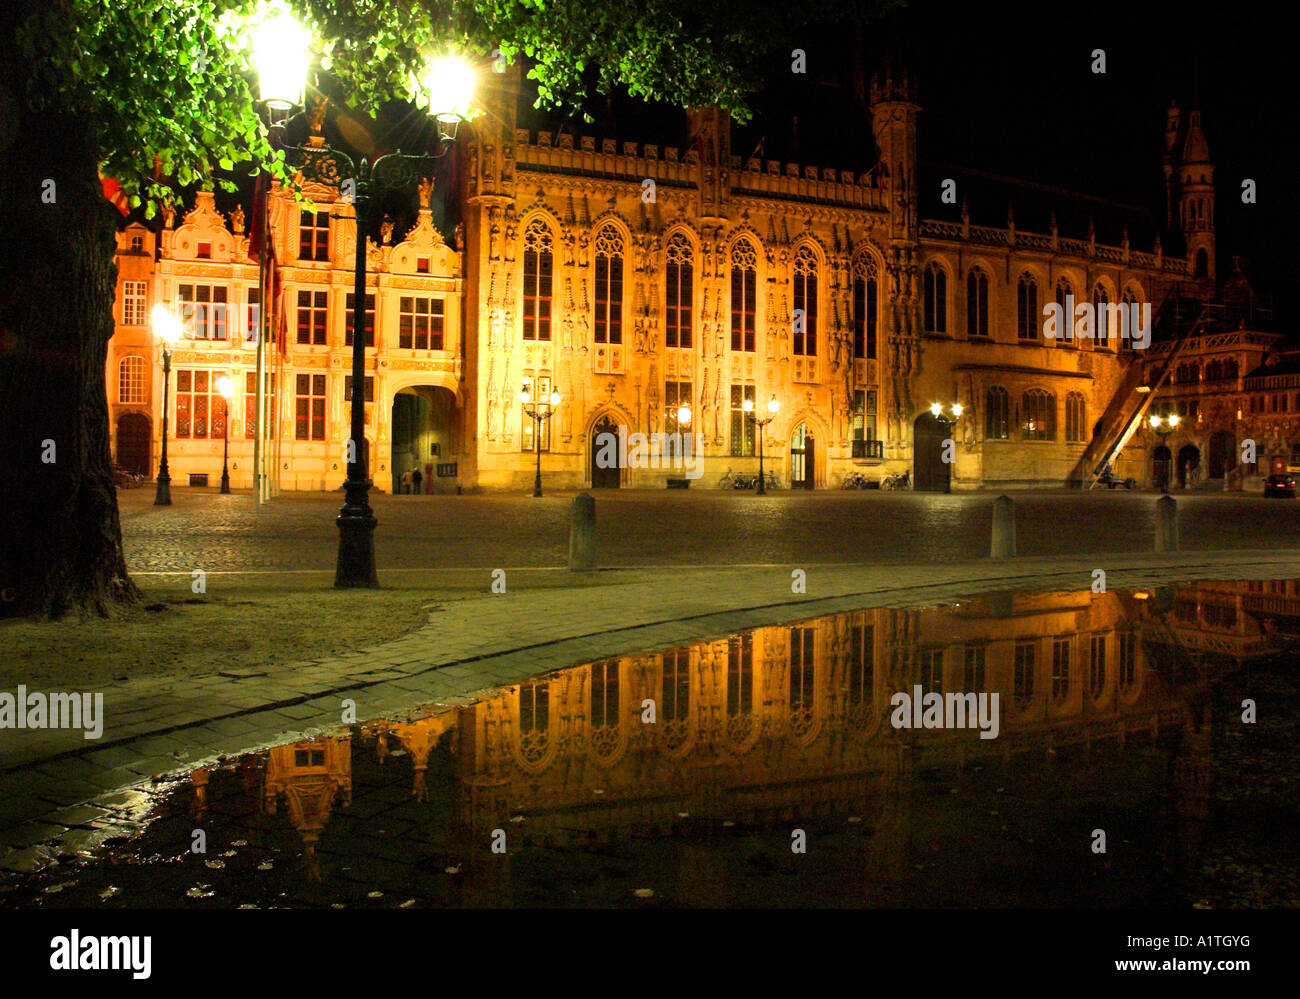 Das Rathaus von der mittelalterlichen Stadt Brügge in der Nacht spiegelt sich in einem kleinen See Stockfoto